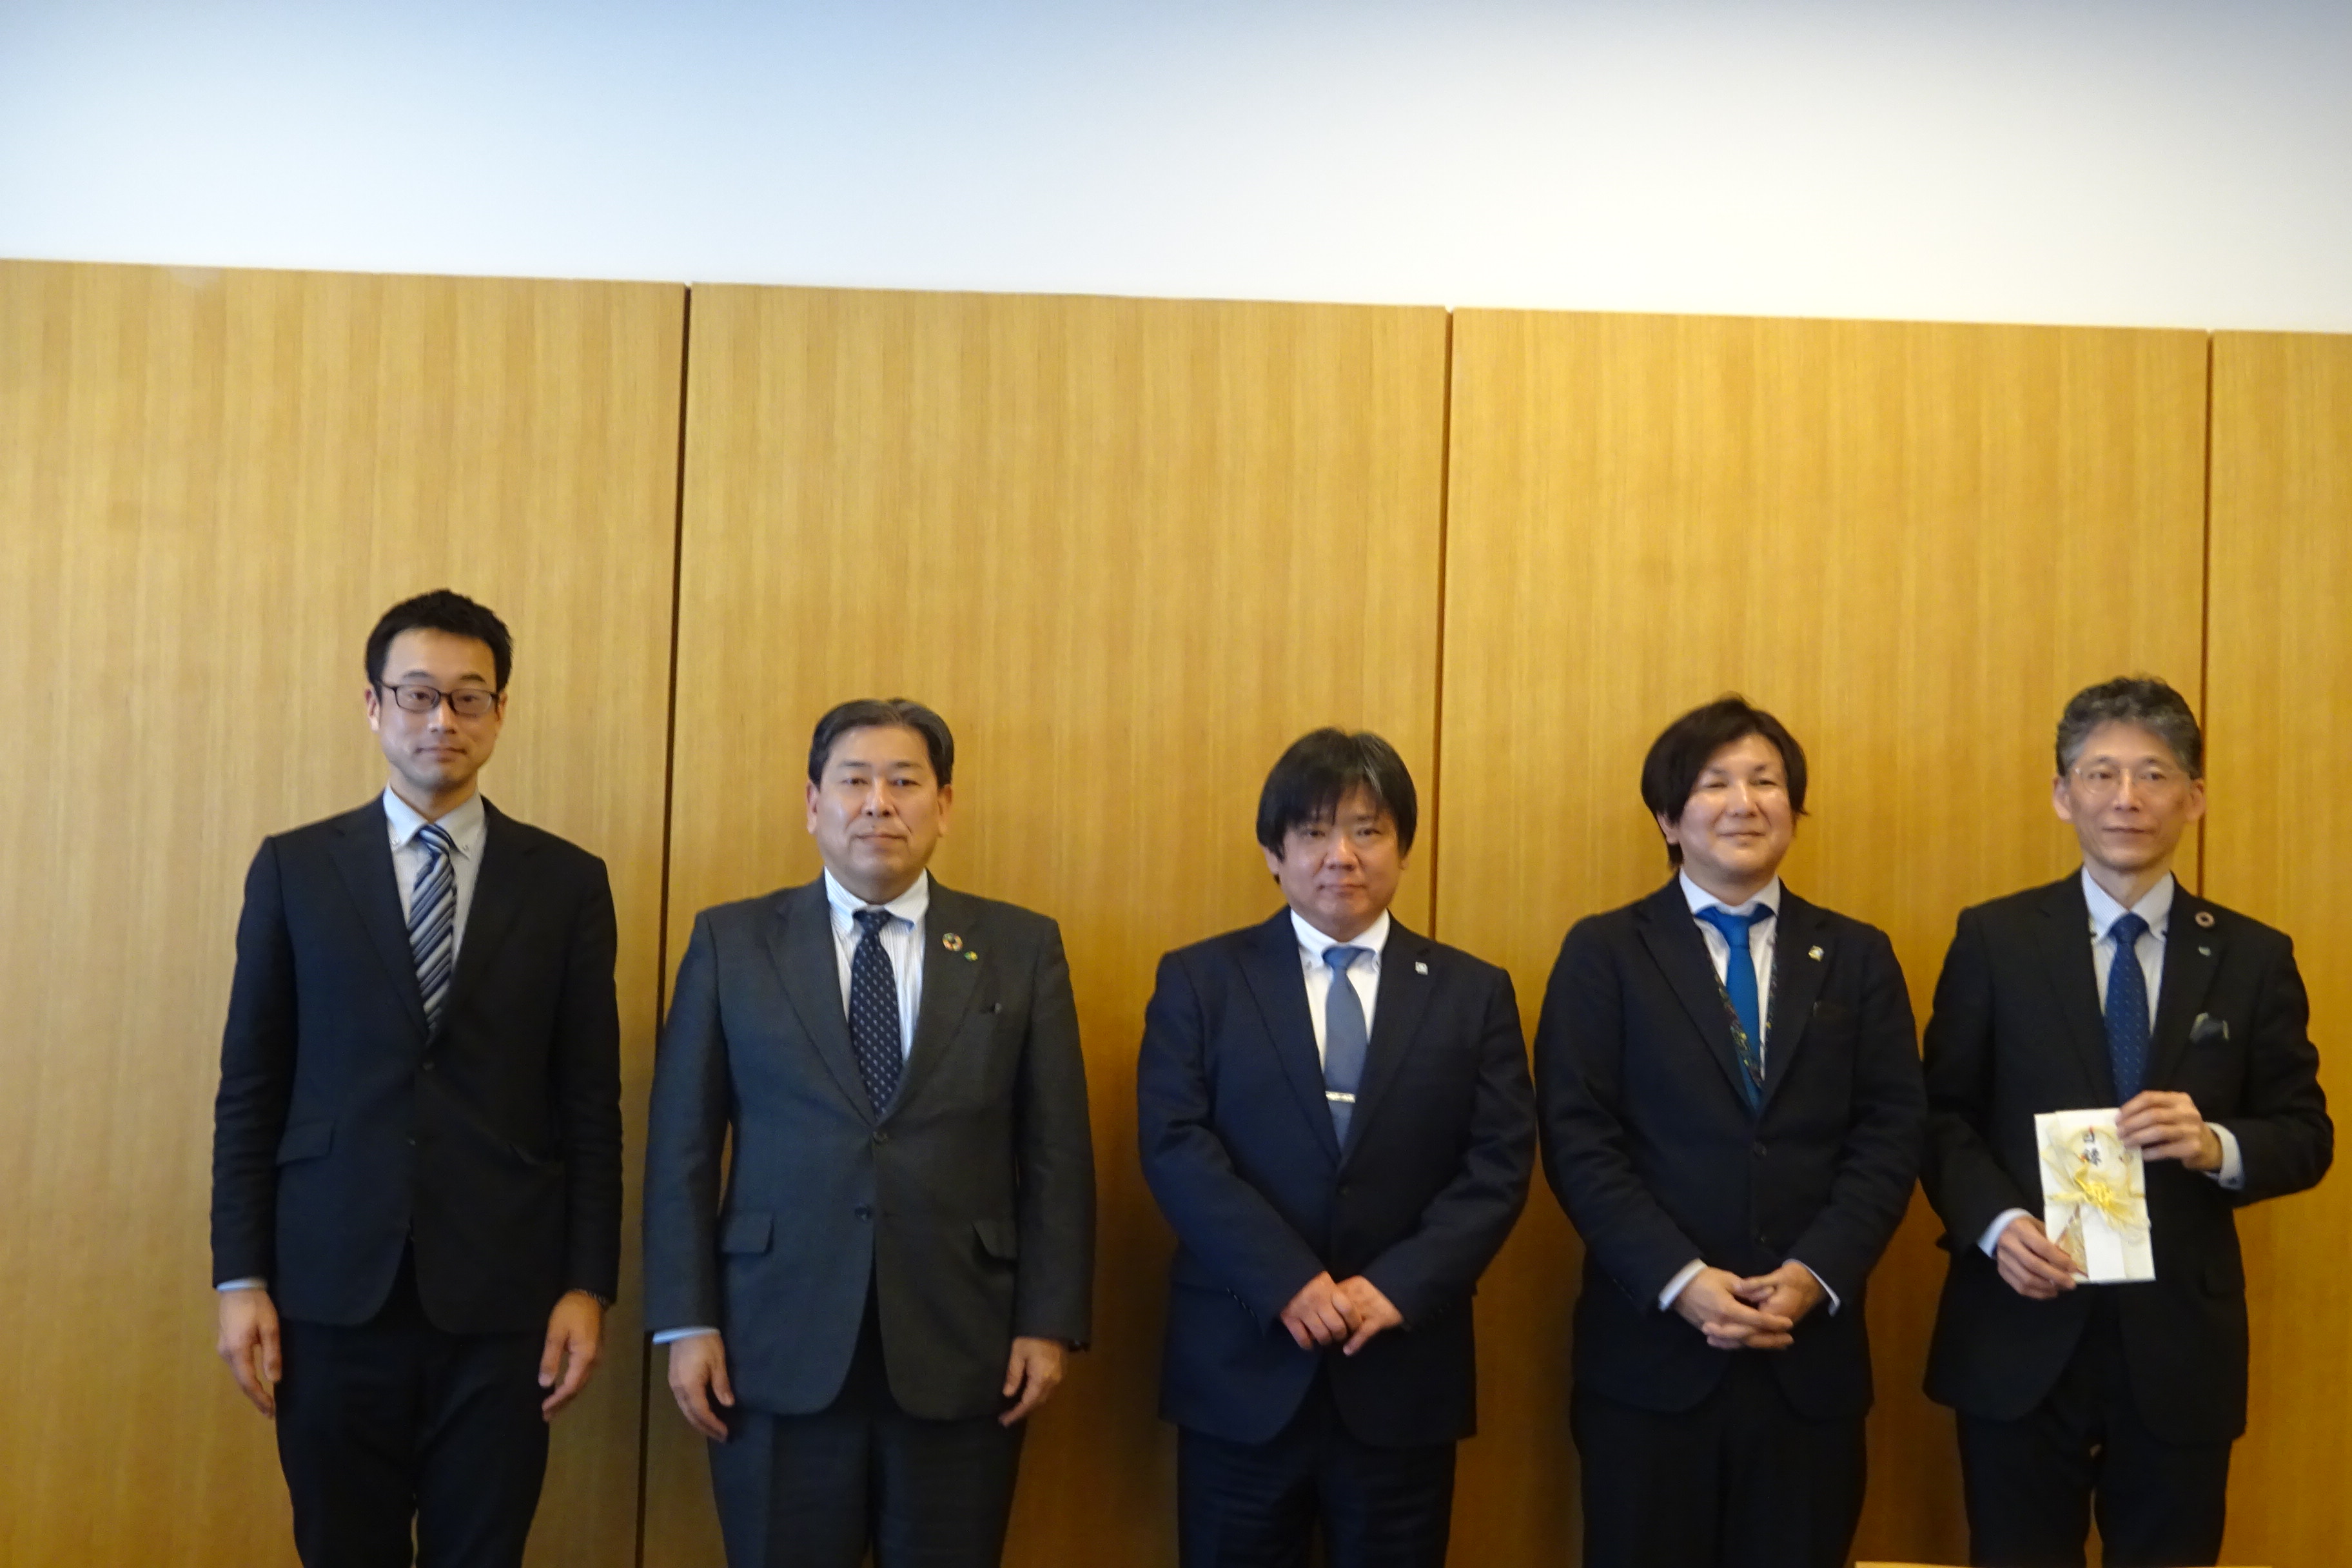 左から、原田、新井、前川、村上の各氏と黒田工学部長の画像